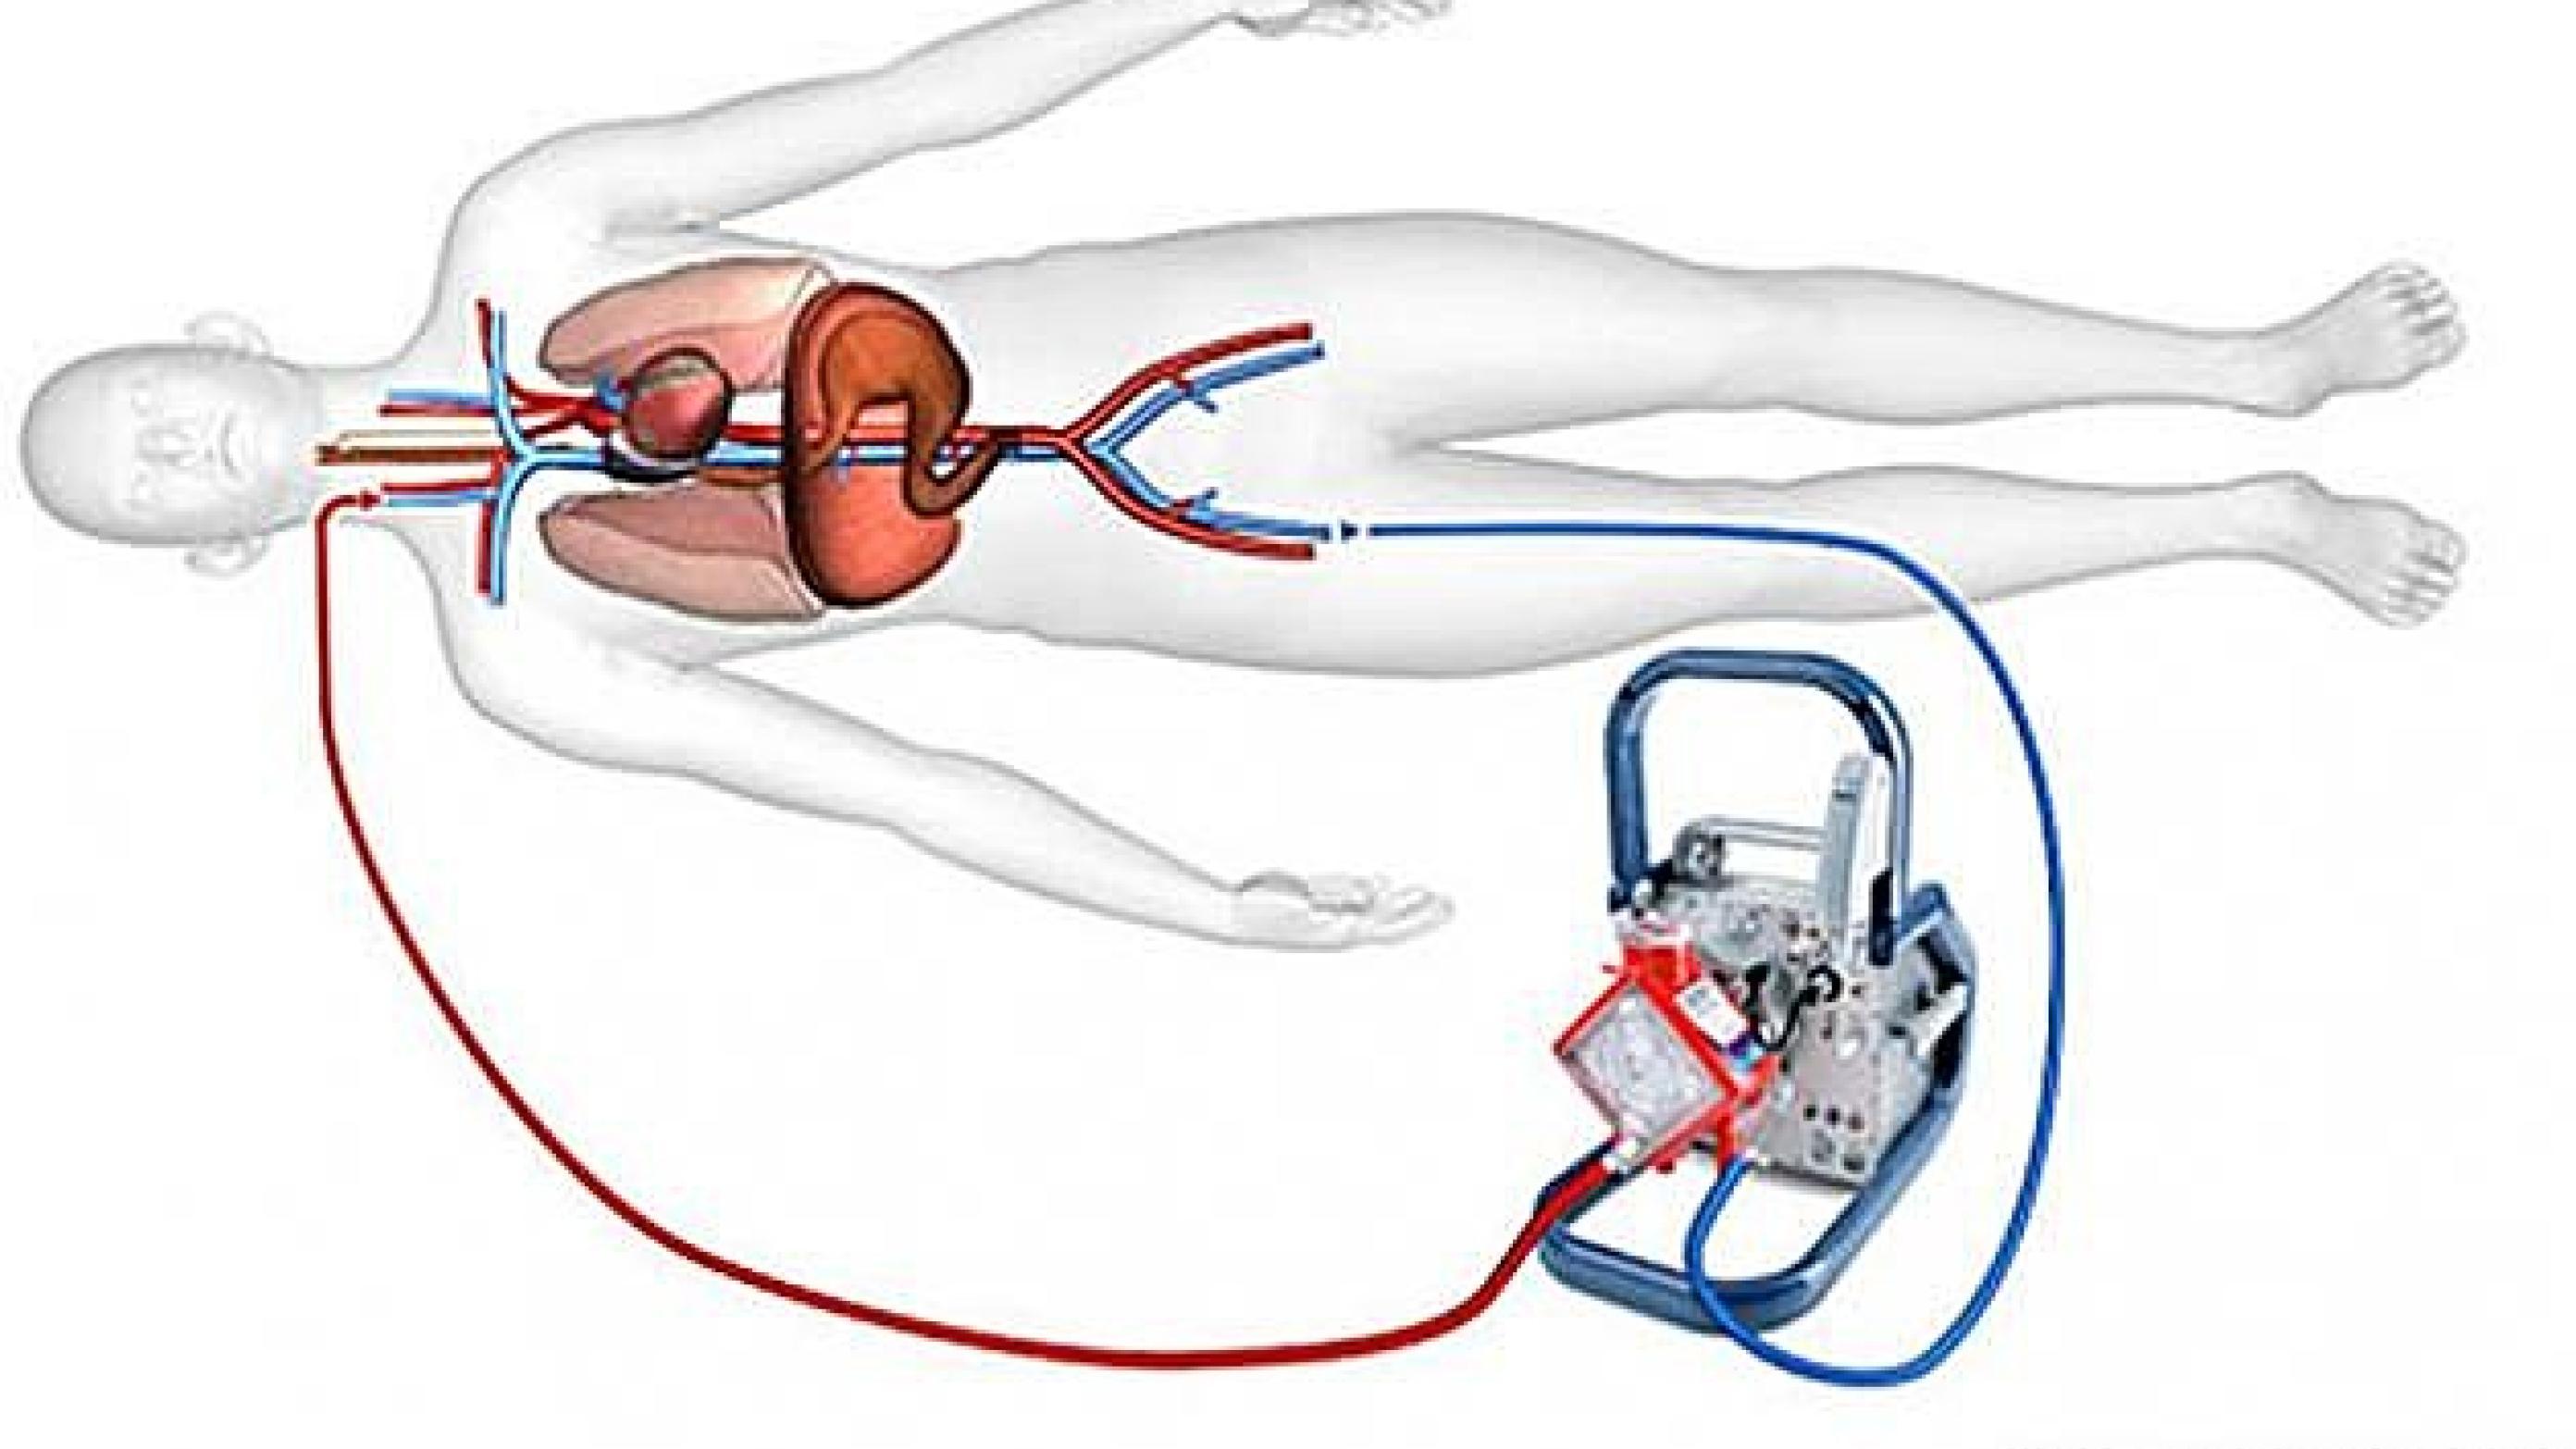 Ved veno-venøs ekstrakorporal membranoxygenering pumpes venøst blod ud via et kateter i vena femoralis, hvorefter det iltes, og CO2 udluftes. Illustrationen er bragt med tilladelse fra Maquet Nordic, www.maguet.com.